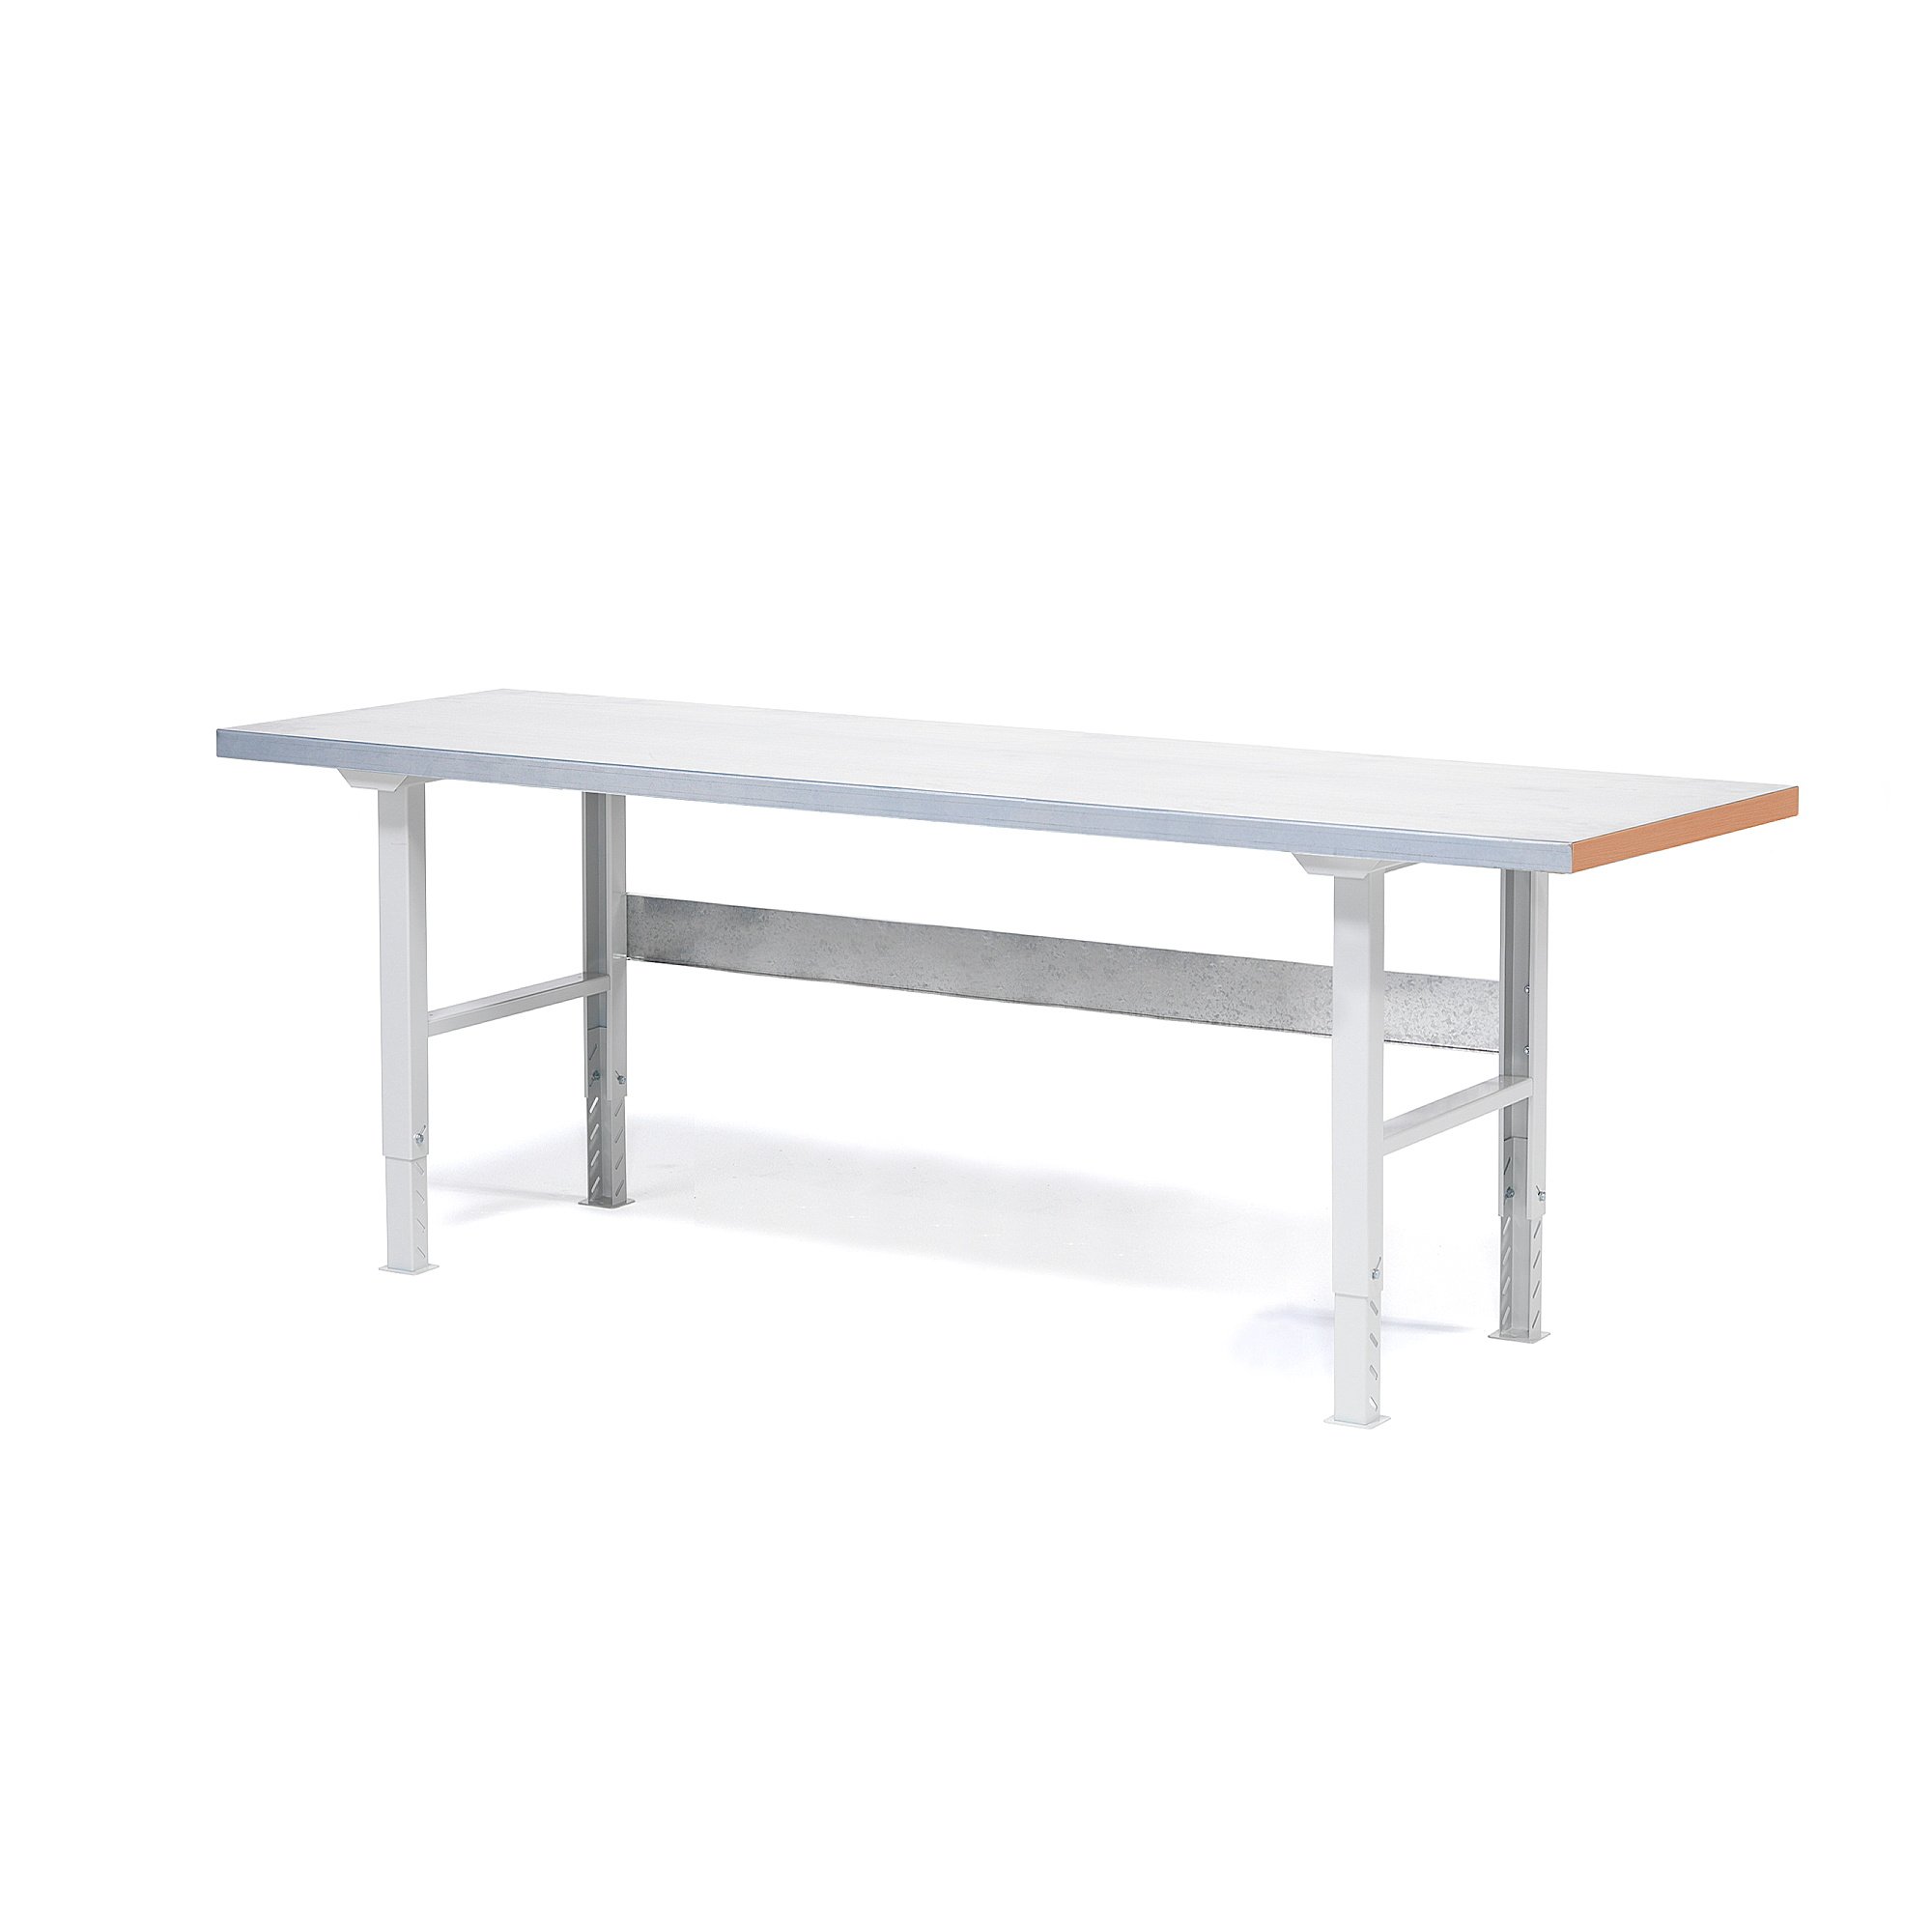 Dílenský stůl SOLID 750, 2500x800 mm, ocelový povrch